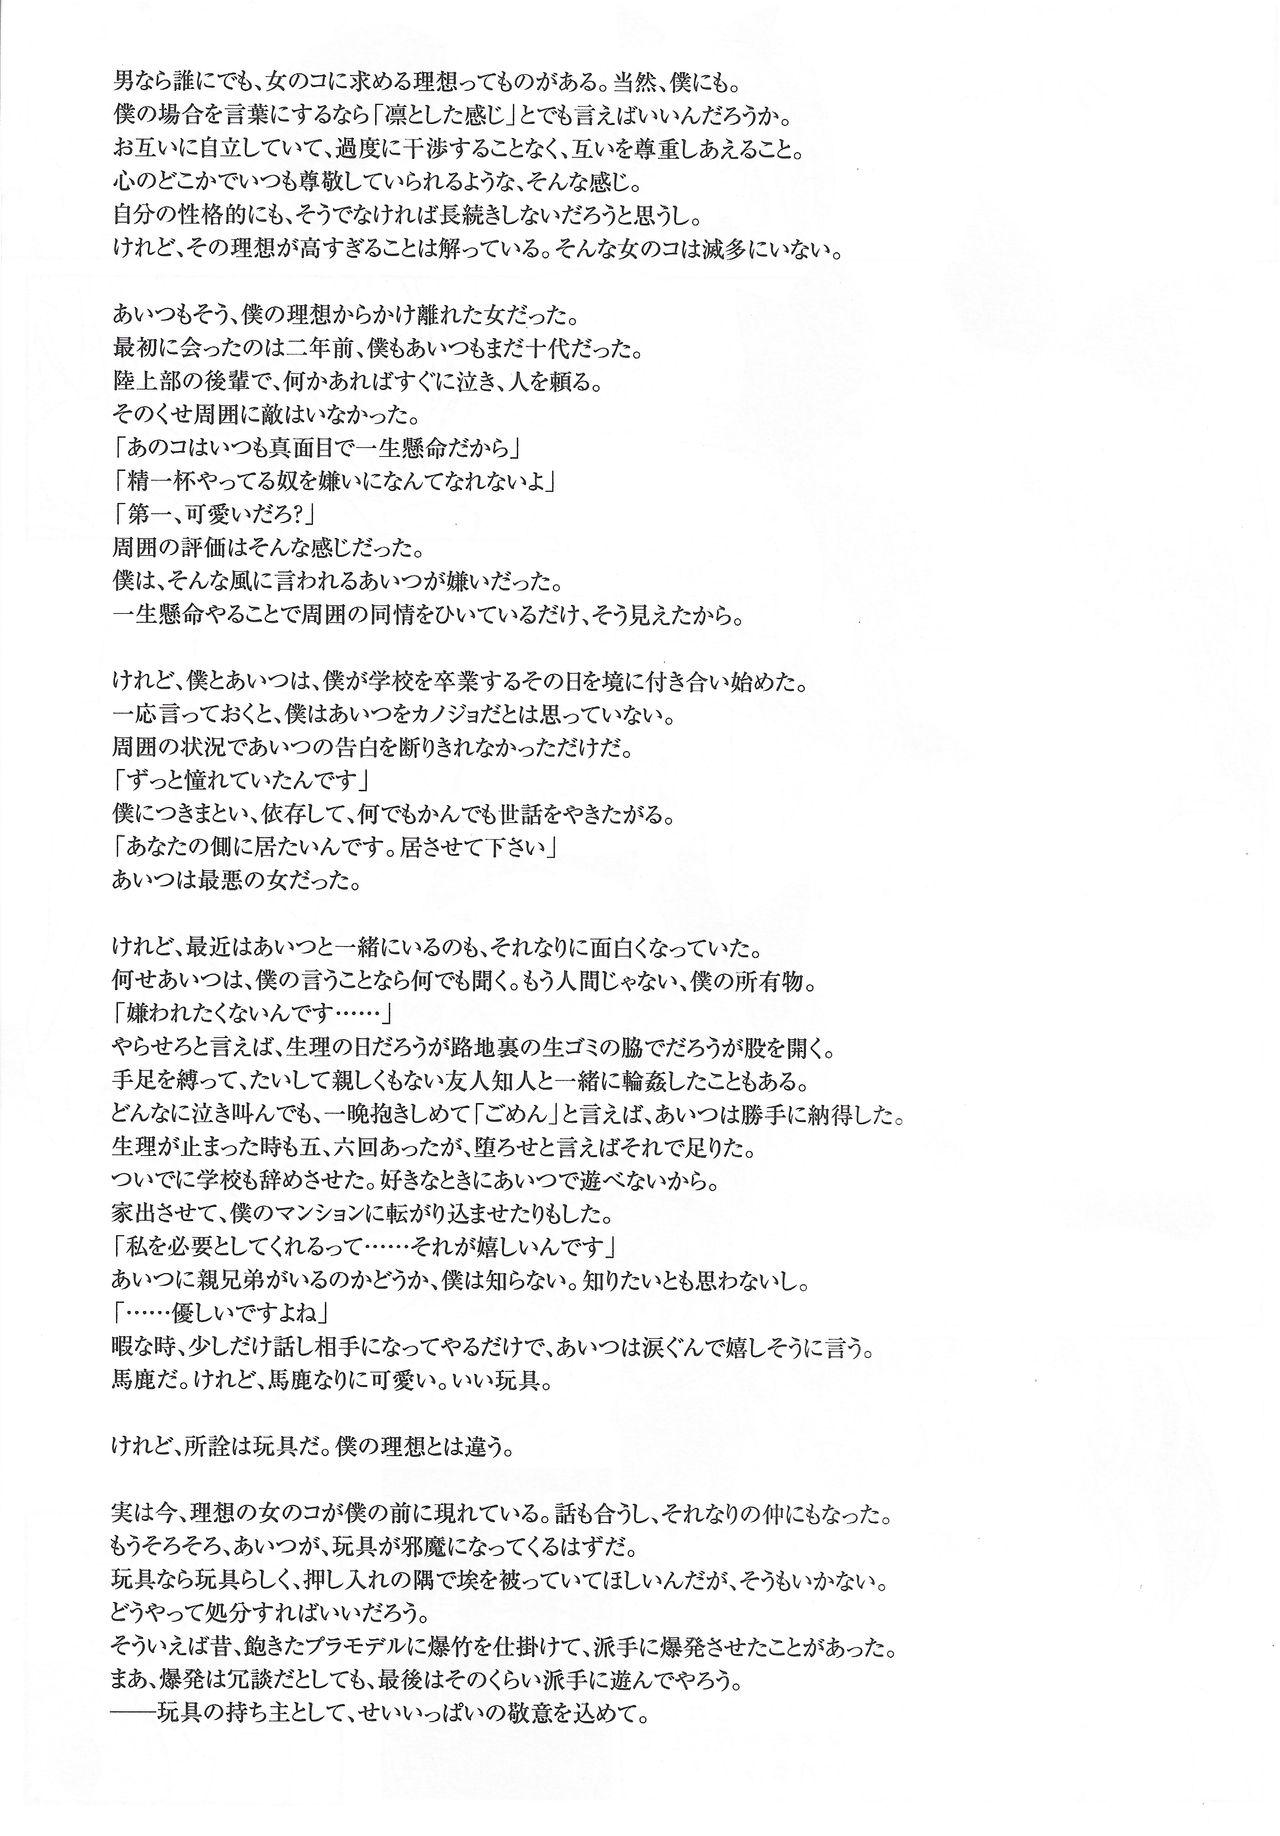 Arisu no Denchi Bakudan Vol. 20 23